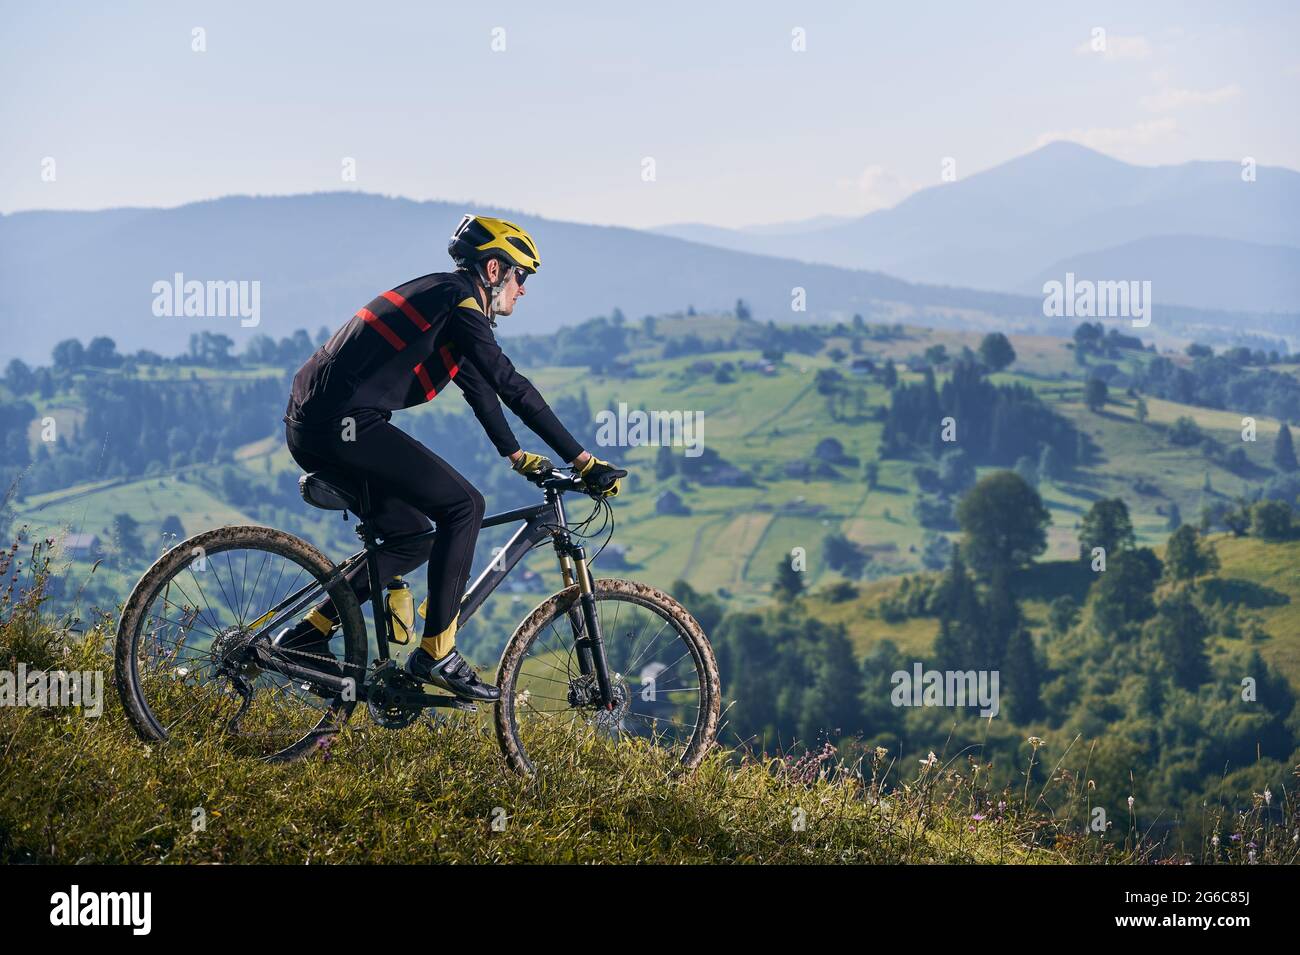 Horizontale Momentaufnahme eines Mannes, der am frühen nebligen Morgen mit seinem Fahrrad in den Bergen fährt und bergab fährt. Gipfel in Wolken, grüne Hügel im Hintergrund. Seitenansicht, Kopierbereich. Konzept des aktiven Lebensstils Stockfoto